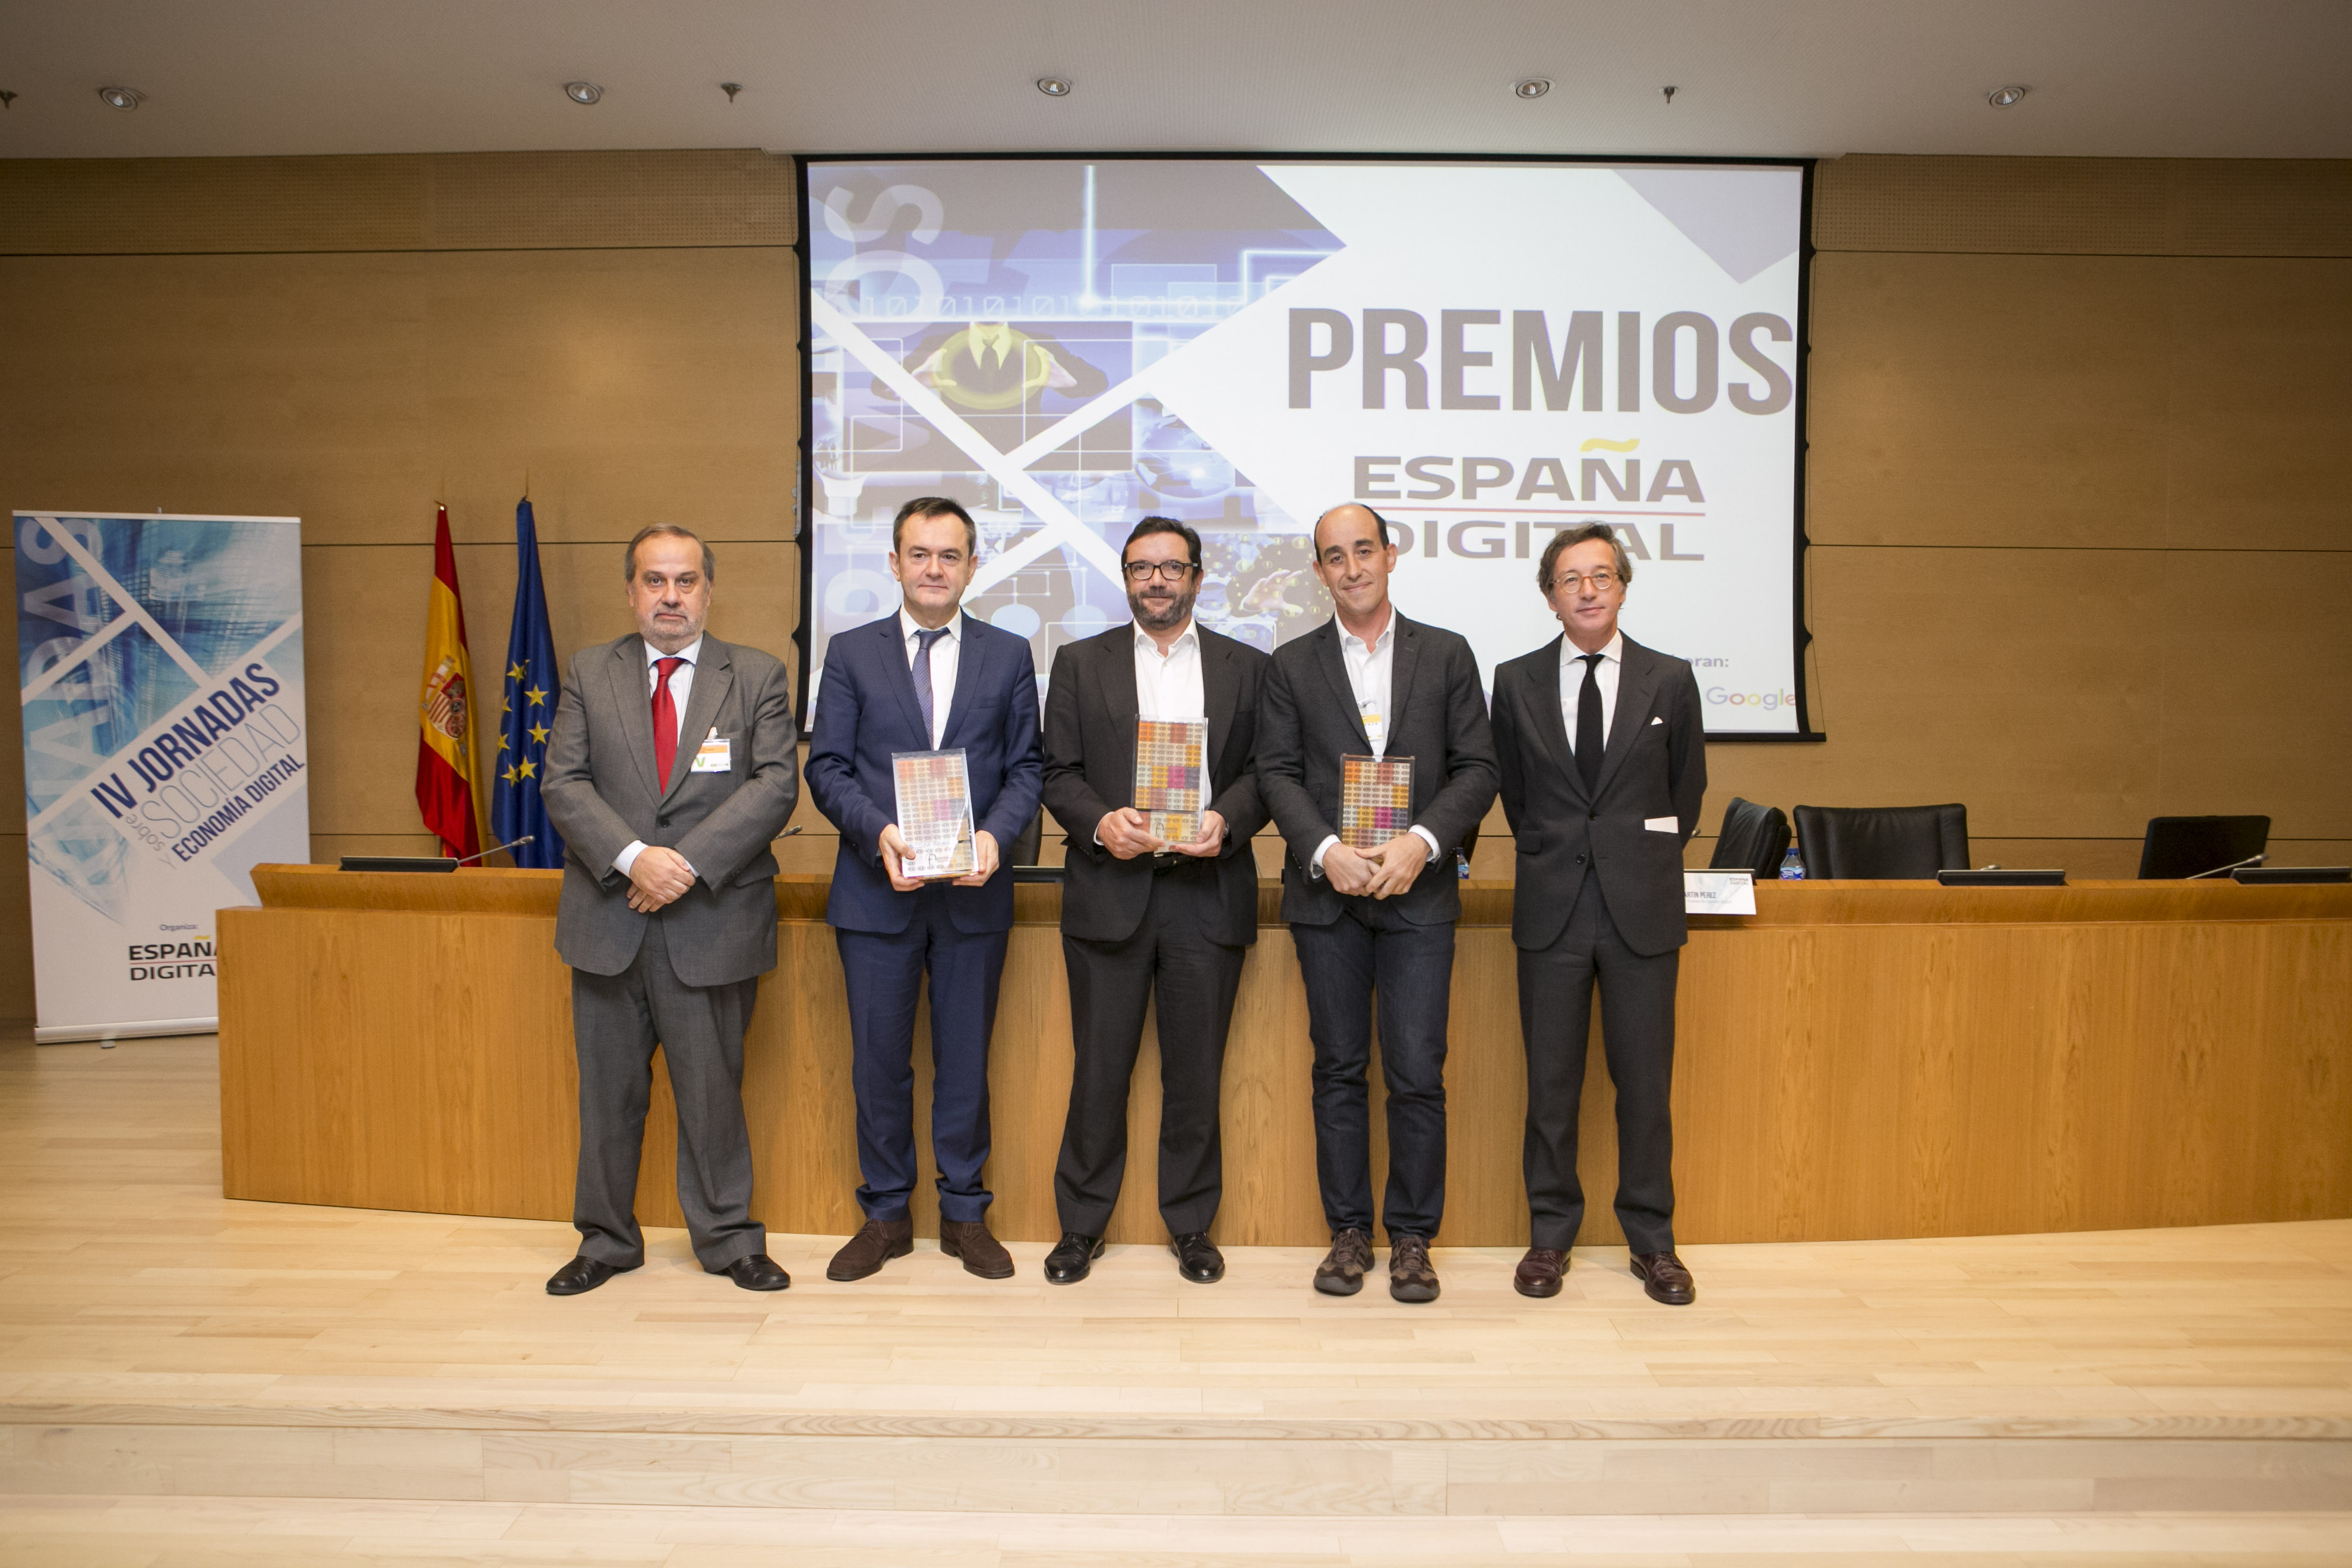 Entrega de los premios “España Digital 2016”